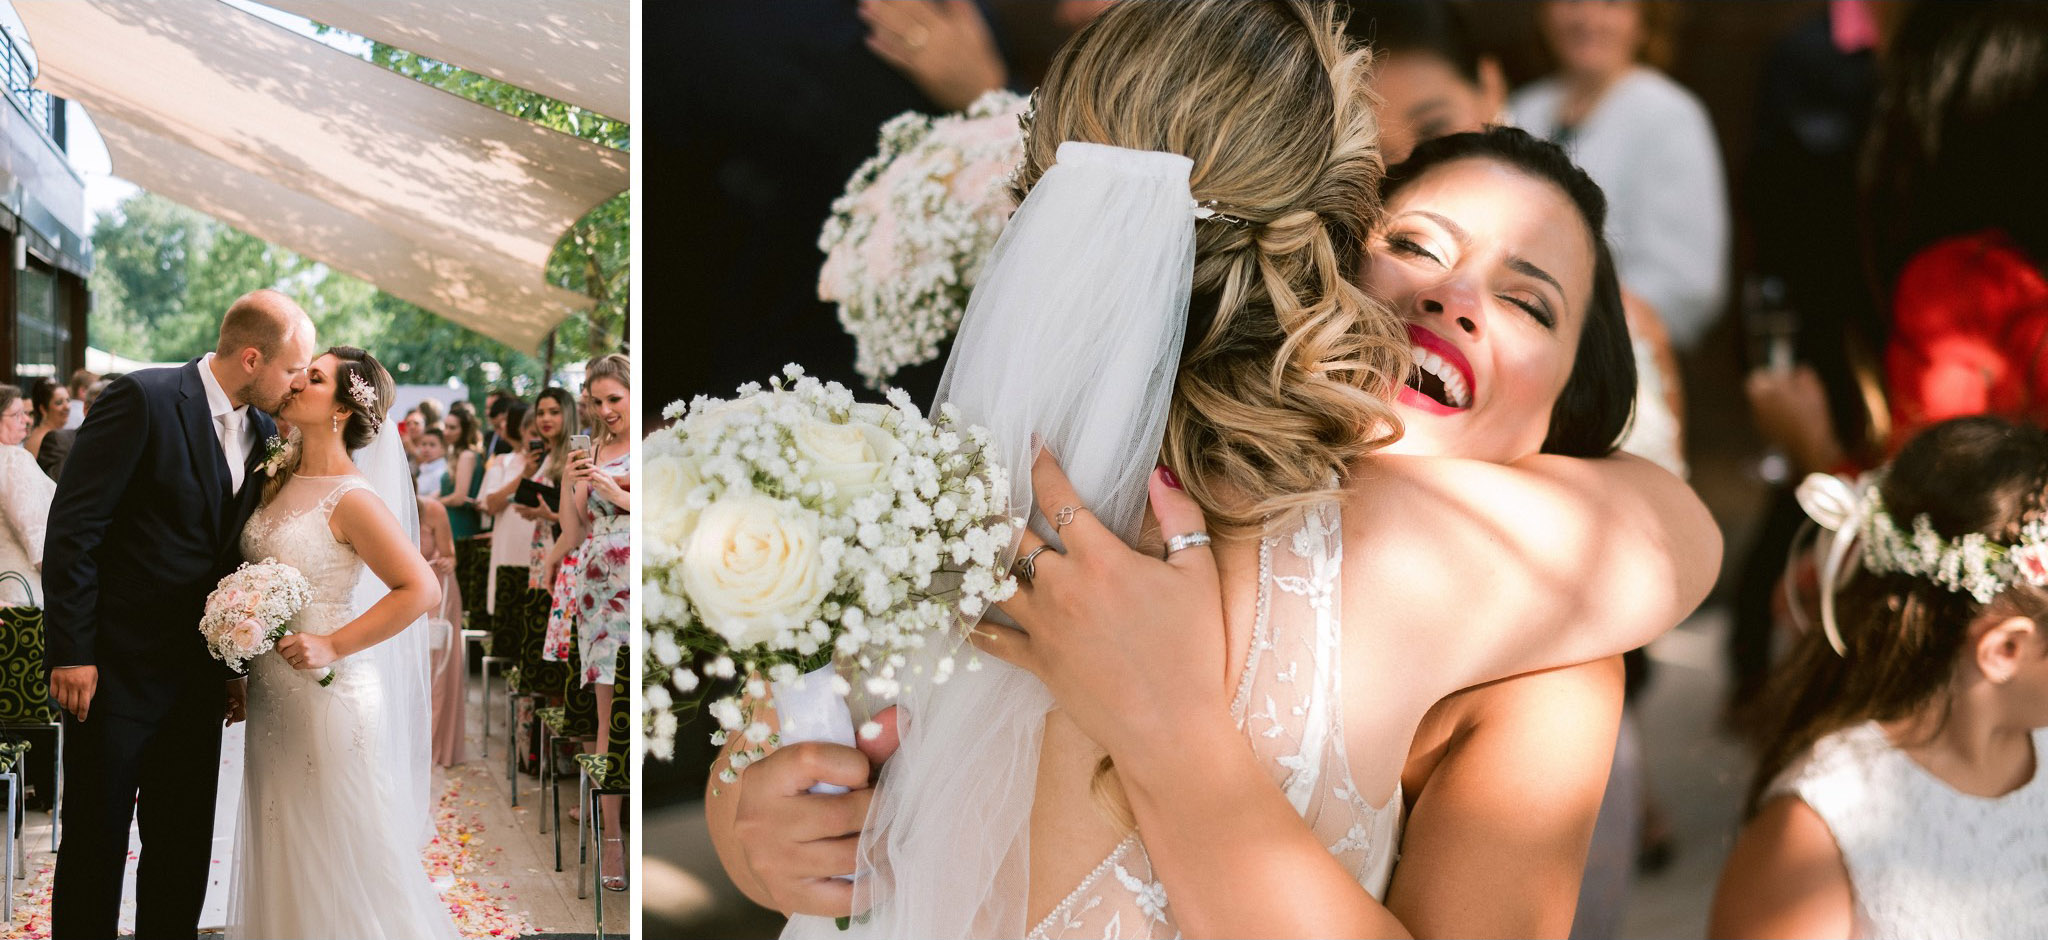 Brazilian Wedding in Hungary - Balazs Lengyel Photographer